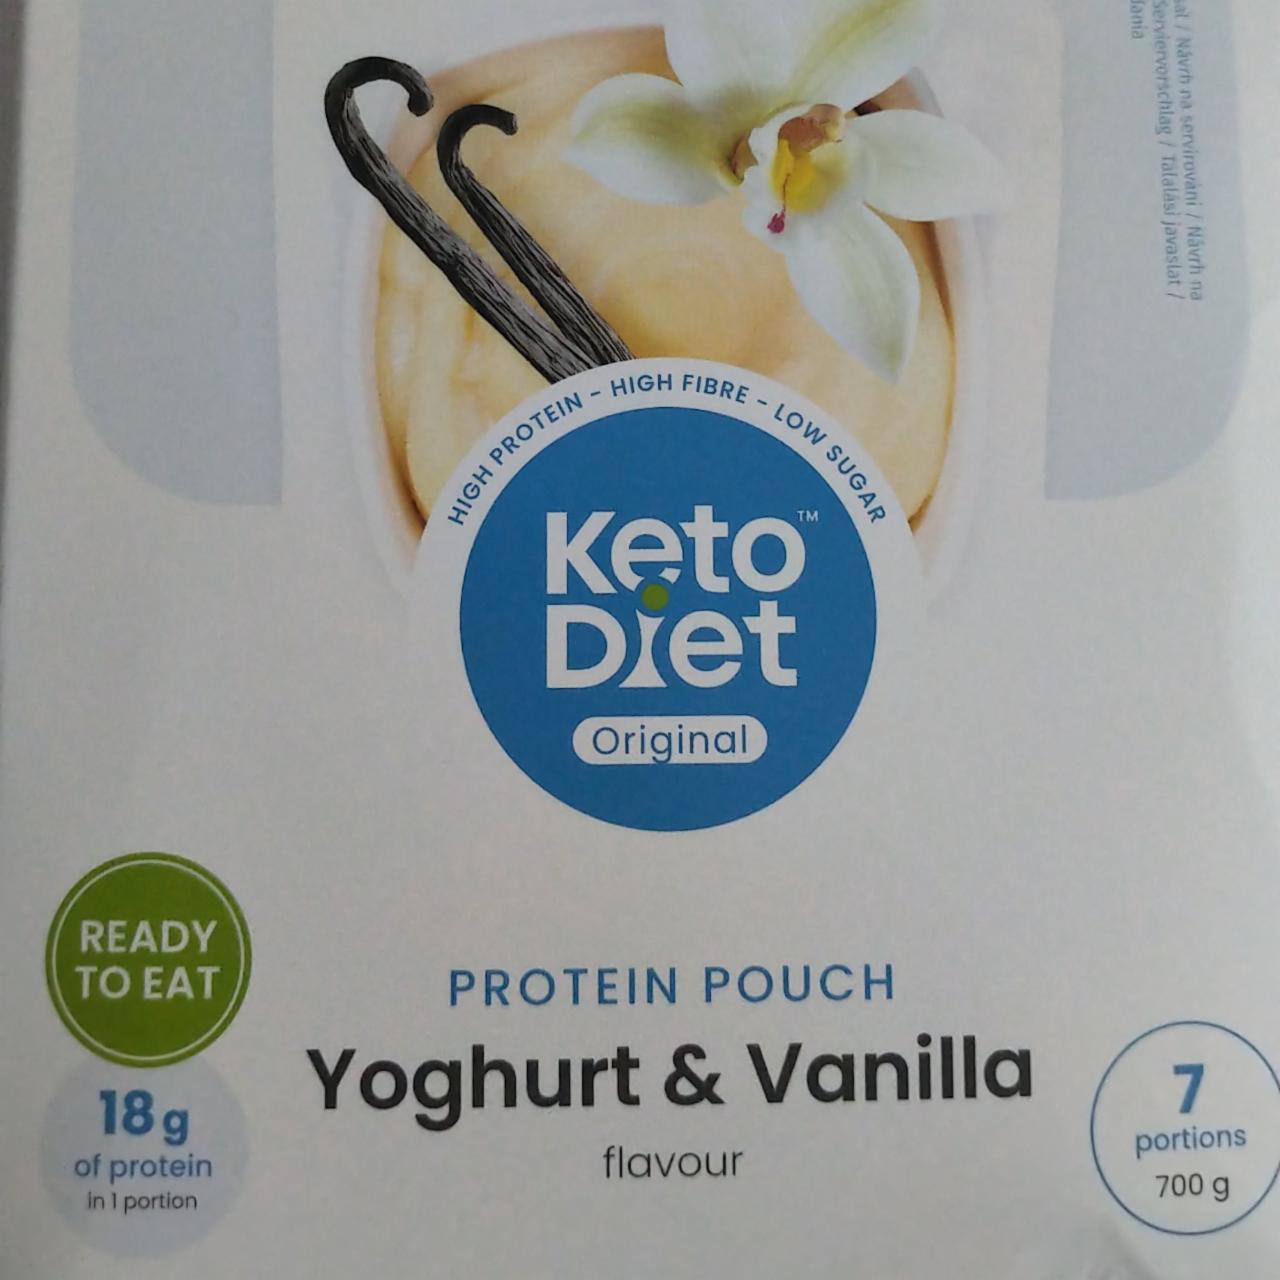 Fotografie - Protein pouch yoghurt & vanilla flavour KetoDiet